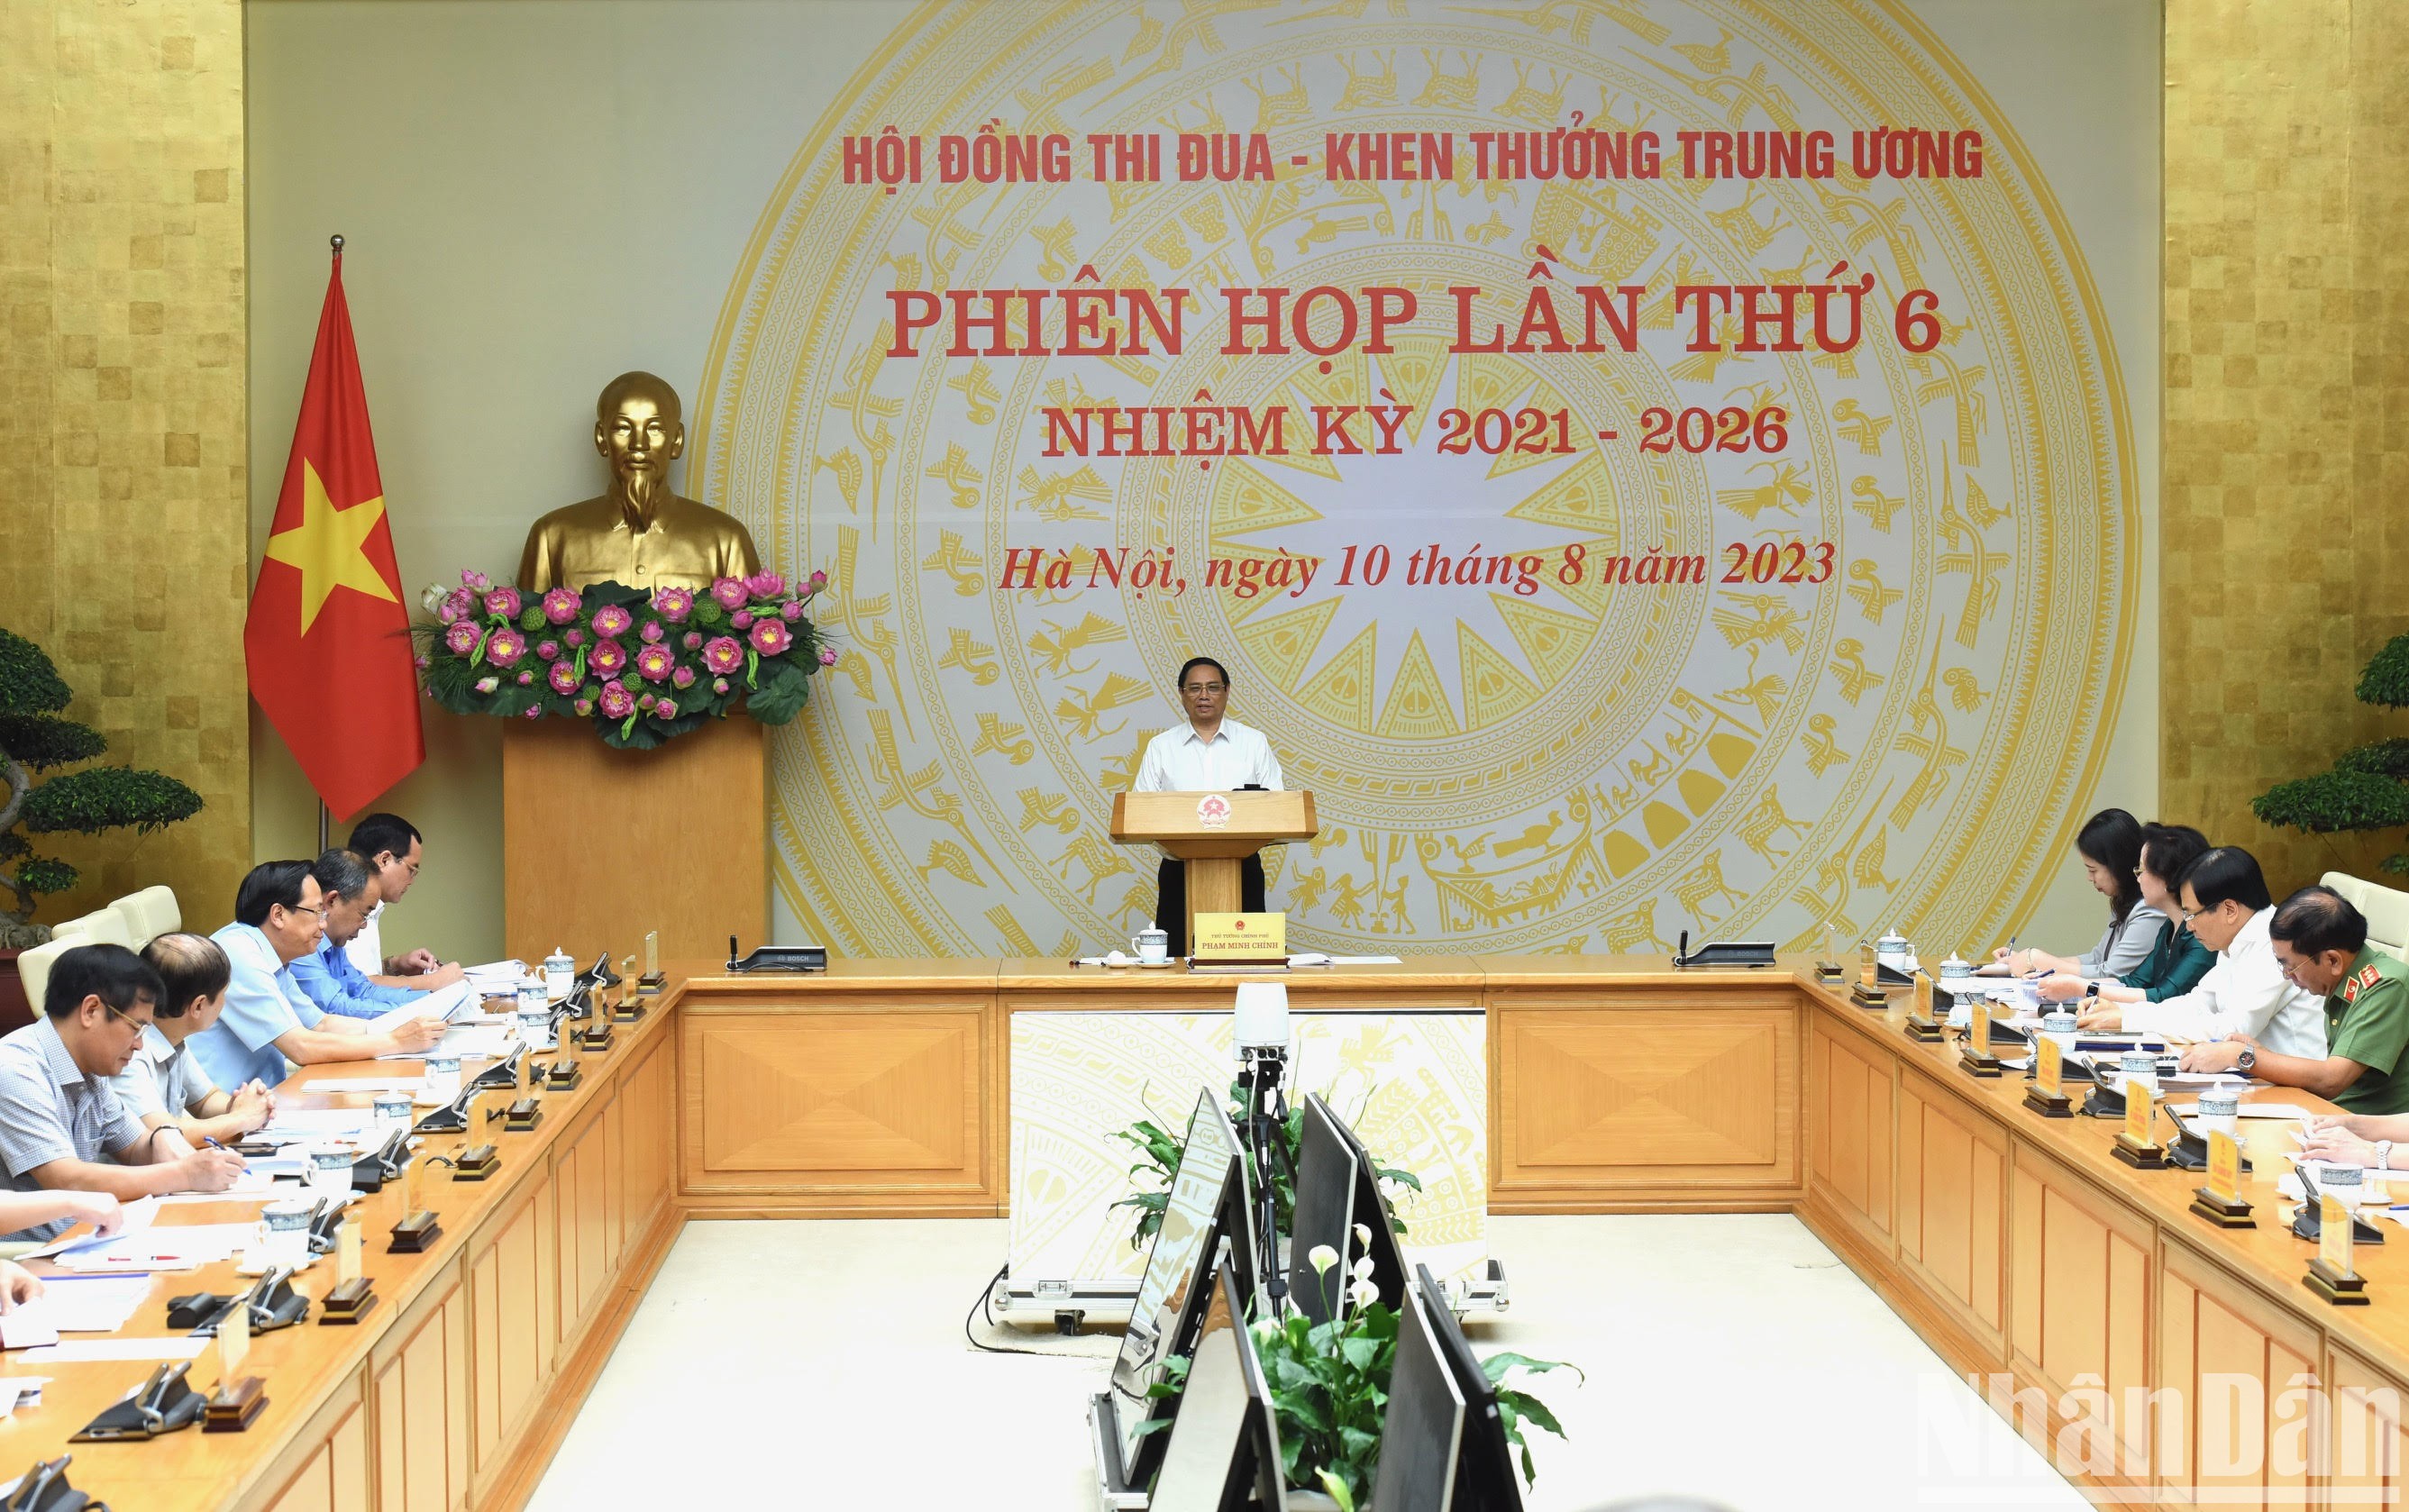 Thủ tướng Phạm Minh Chính, Chủ tịch Hội đồng Thi đua-Khen thưởng Trung ương, chủ trì phiên họp lần thứ 6 nhiệm kỳ 2021-2026 của Hội đồng.